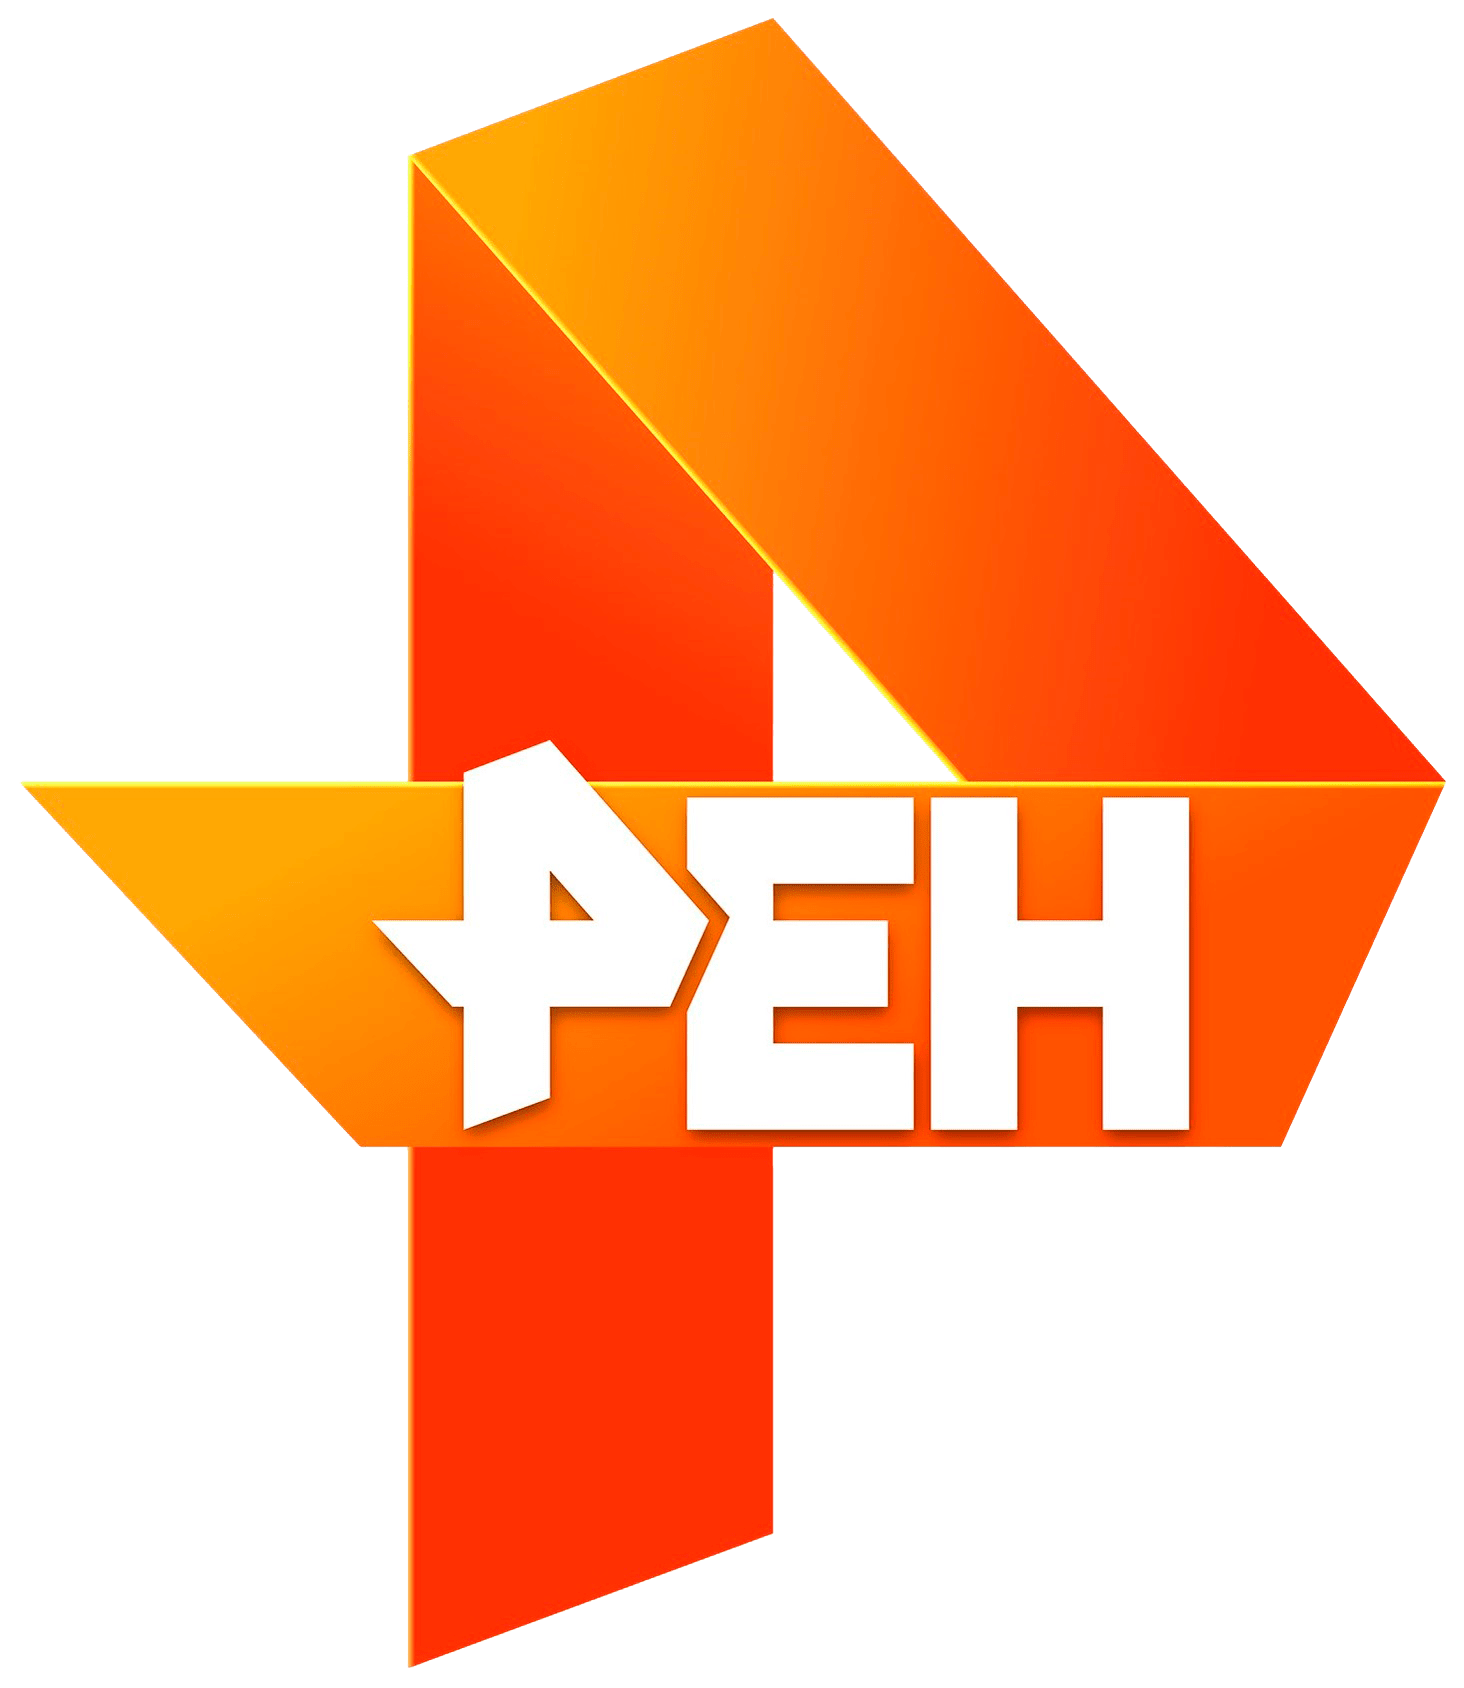 Раземщение рекламы РЕН ТВ, г. Чебоксары